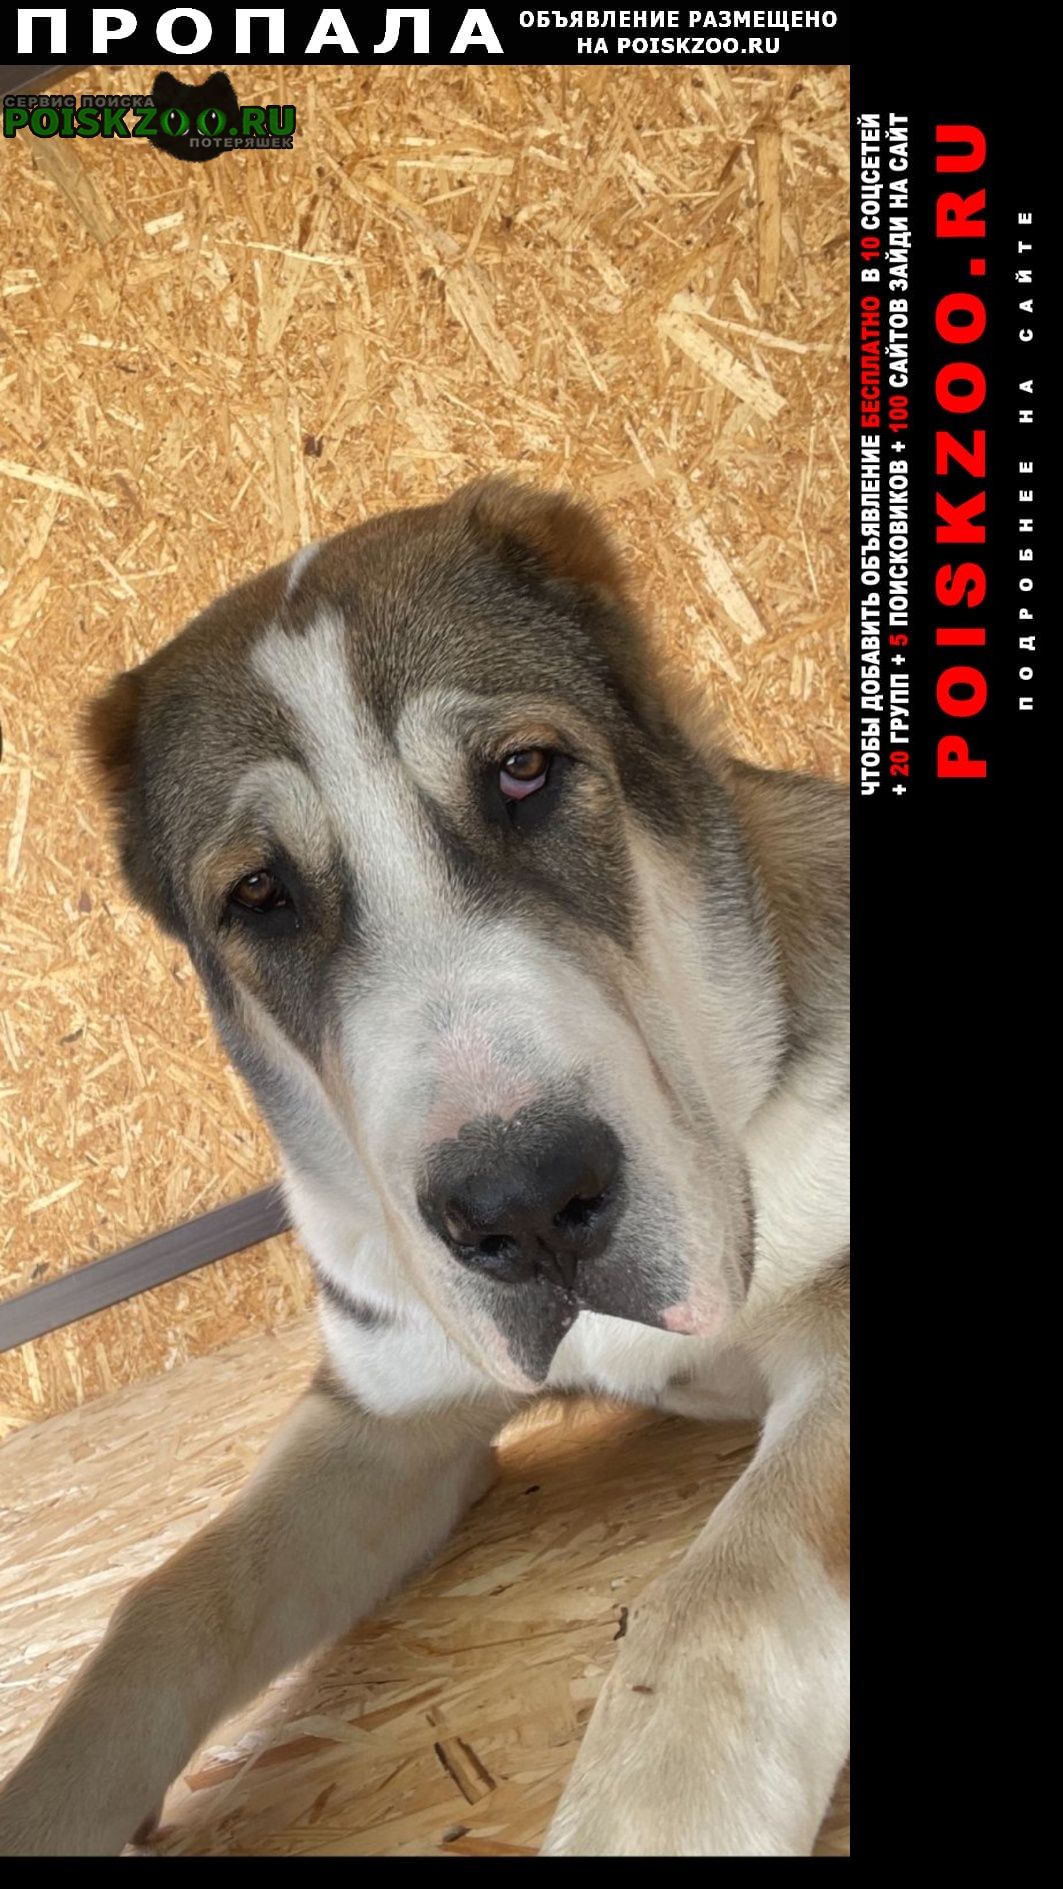 Арамиль Пропала собака кобель потерялась собака алабай в п. бобровский